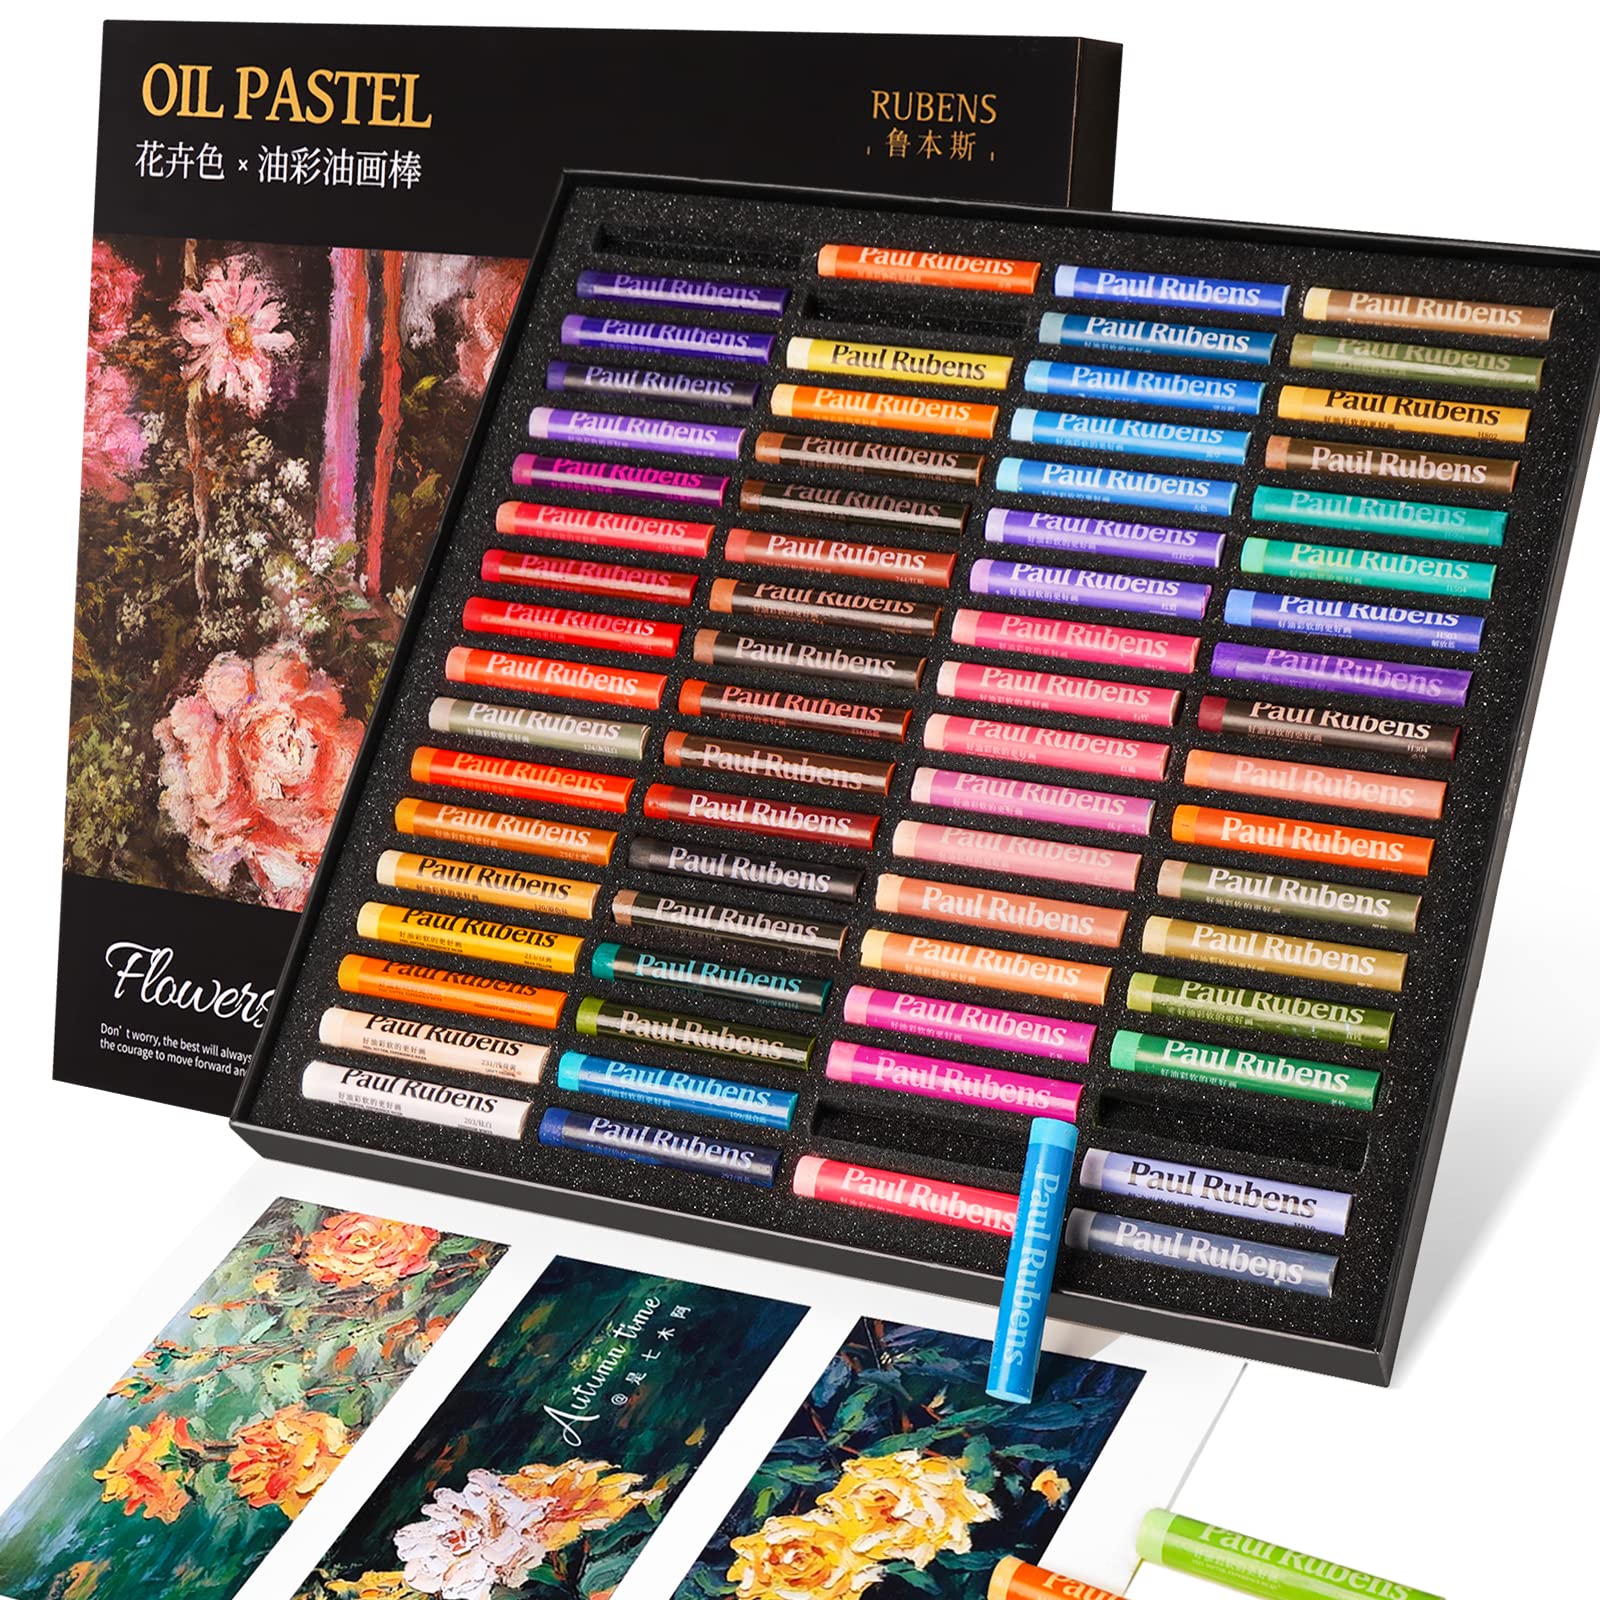 Paul Rubens オイルパステル、72色の花の色アーティストソフトオイルパステルセット鮮やかでクリーミー..